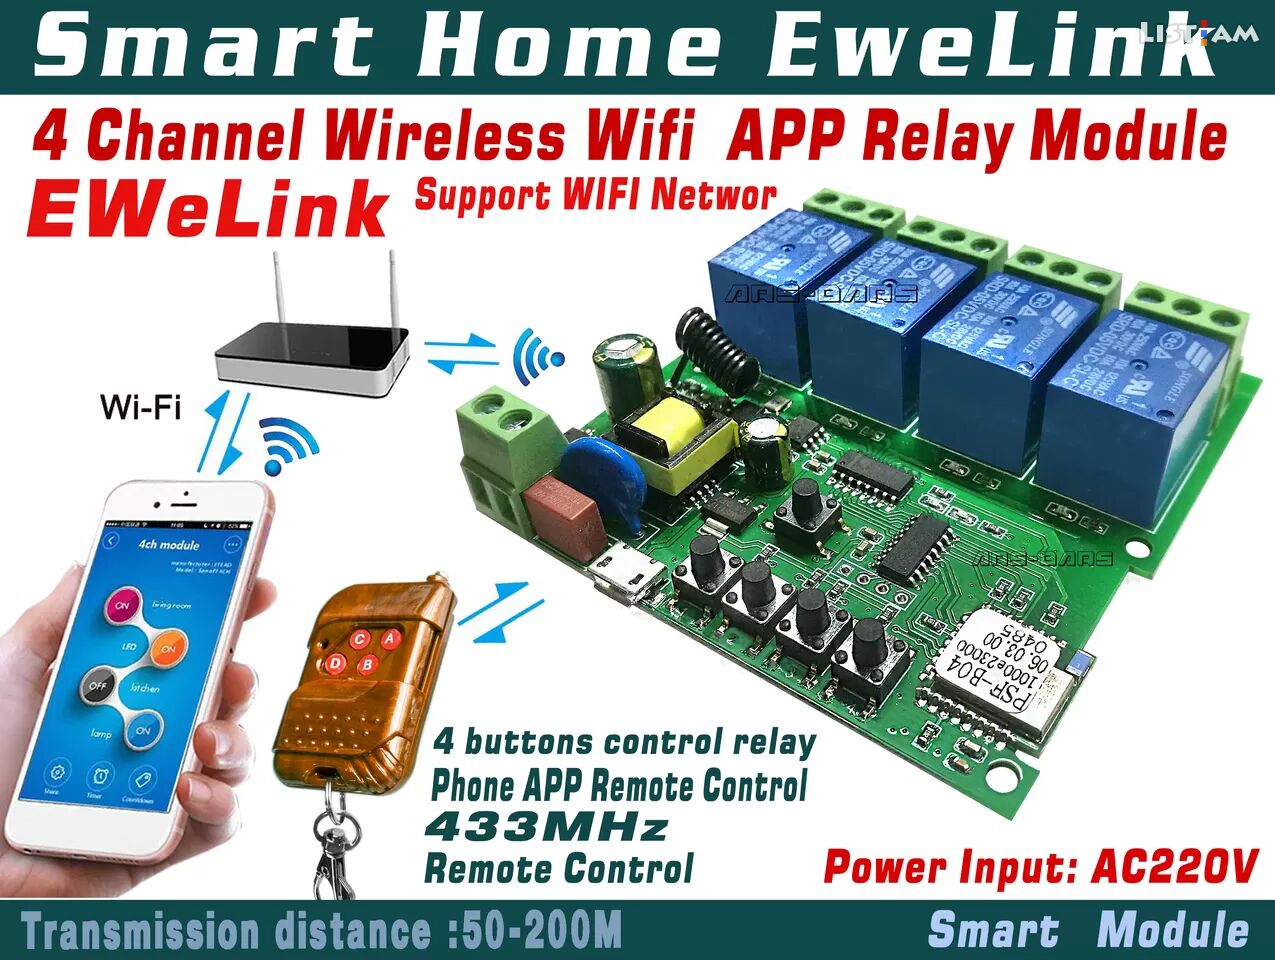 EweLink smart home